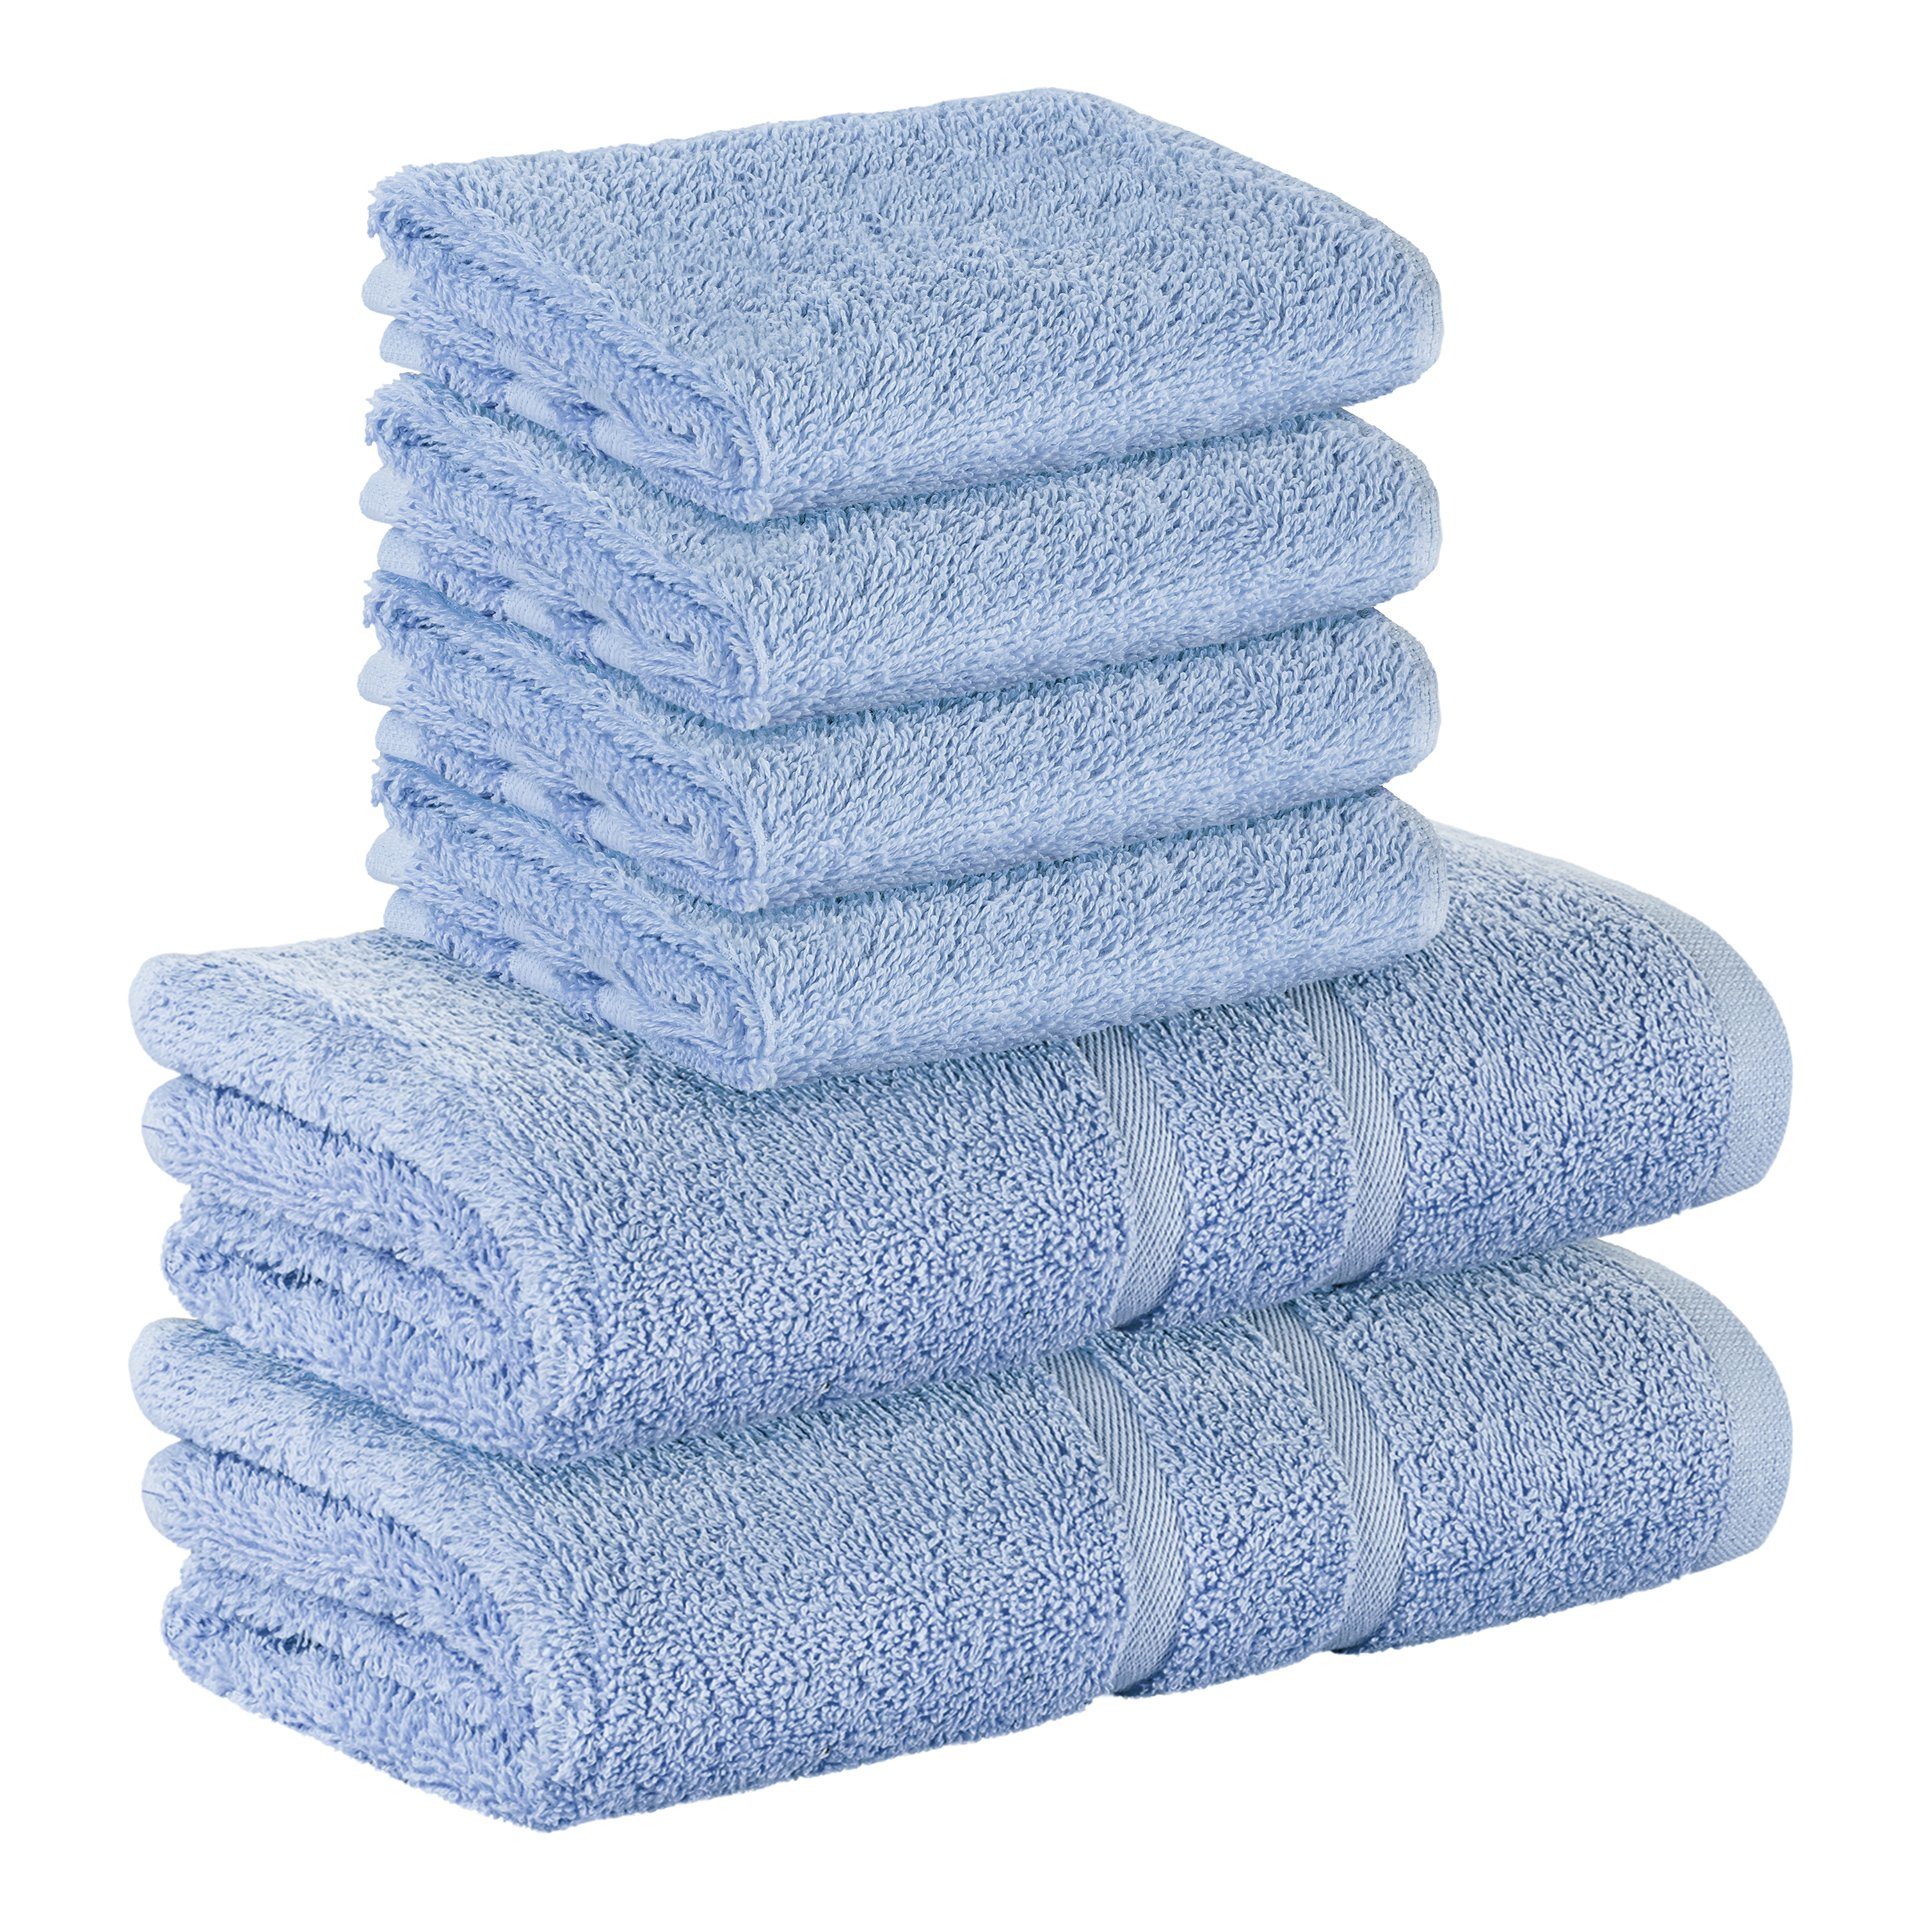 StickandShine Handtuch Set 4x Gästehandtuch 2x Handtücher als SET in verschiedenen Farben (6 Teilig) 100% Baumwolle 500 GSM Frottee 6er Handtuch Pack, (Sparset), 100% Baumwolle 500 GSM Hellblau